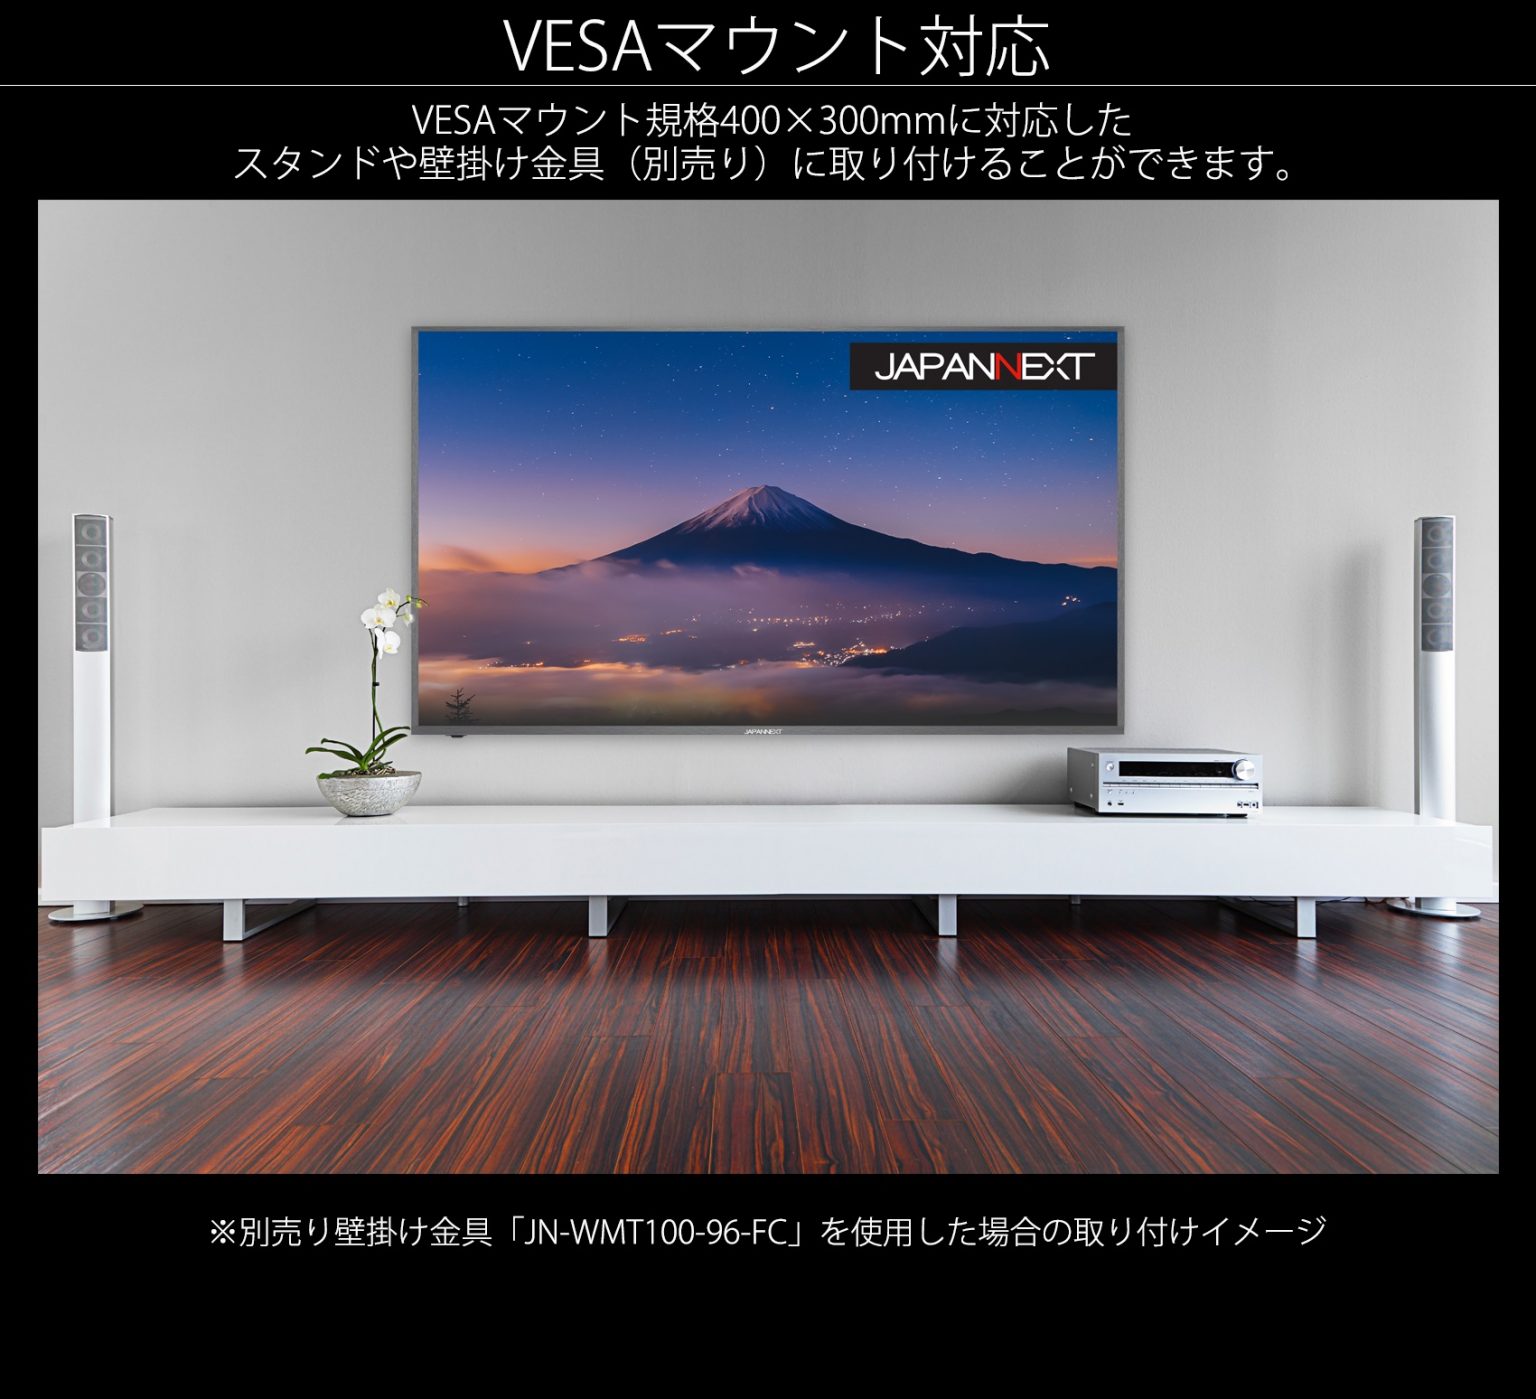 JAPANNEXT JN-IPS7502TUHDR 75インチ大型ディスプレイ（4K/UHD, IPS系パネル, HDR, HDMI2.0